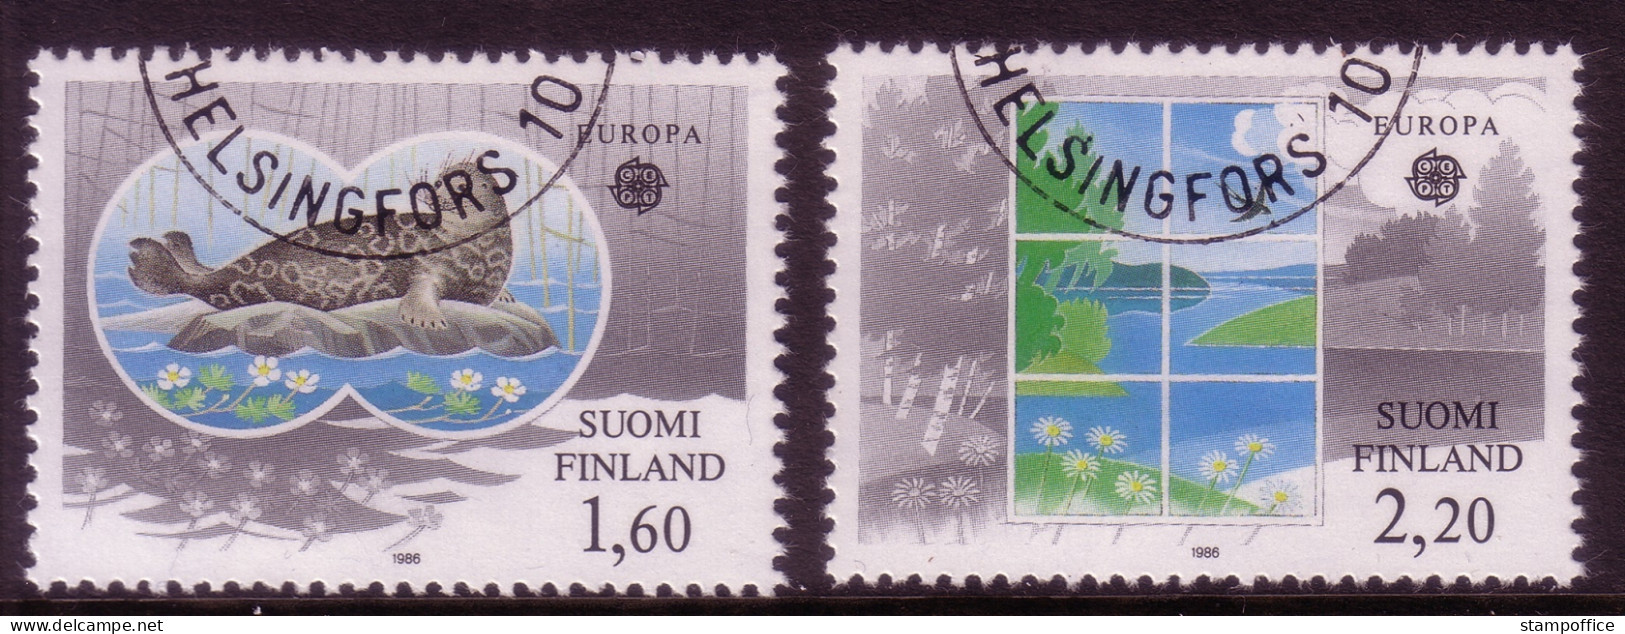 FINNLAND MI-NR. 985-986 GESTEMPELT(USED) EUROPA 1986 NATUR- Und UMWELTSCHUTZ ROBBE - 1986